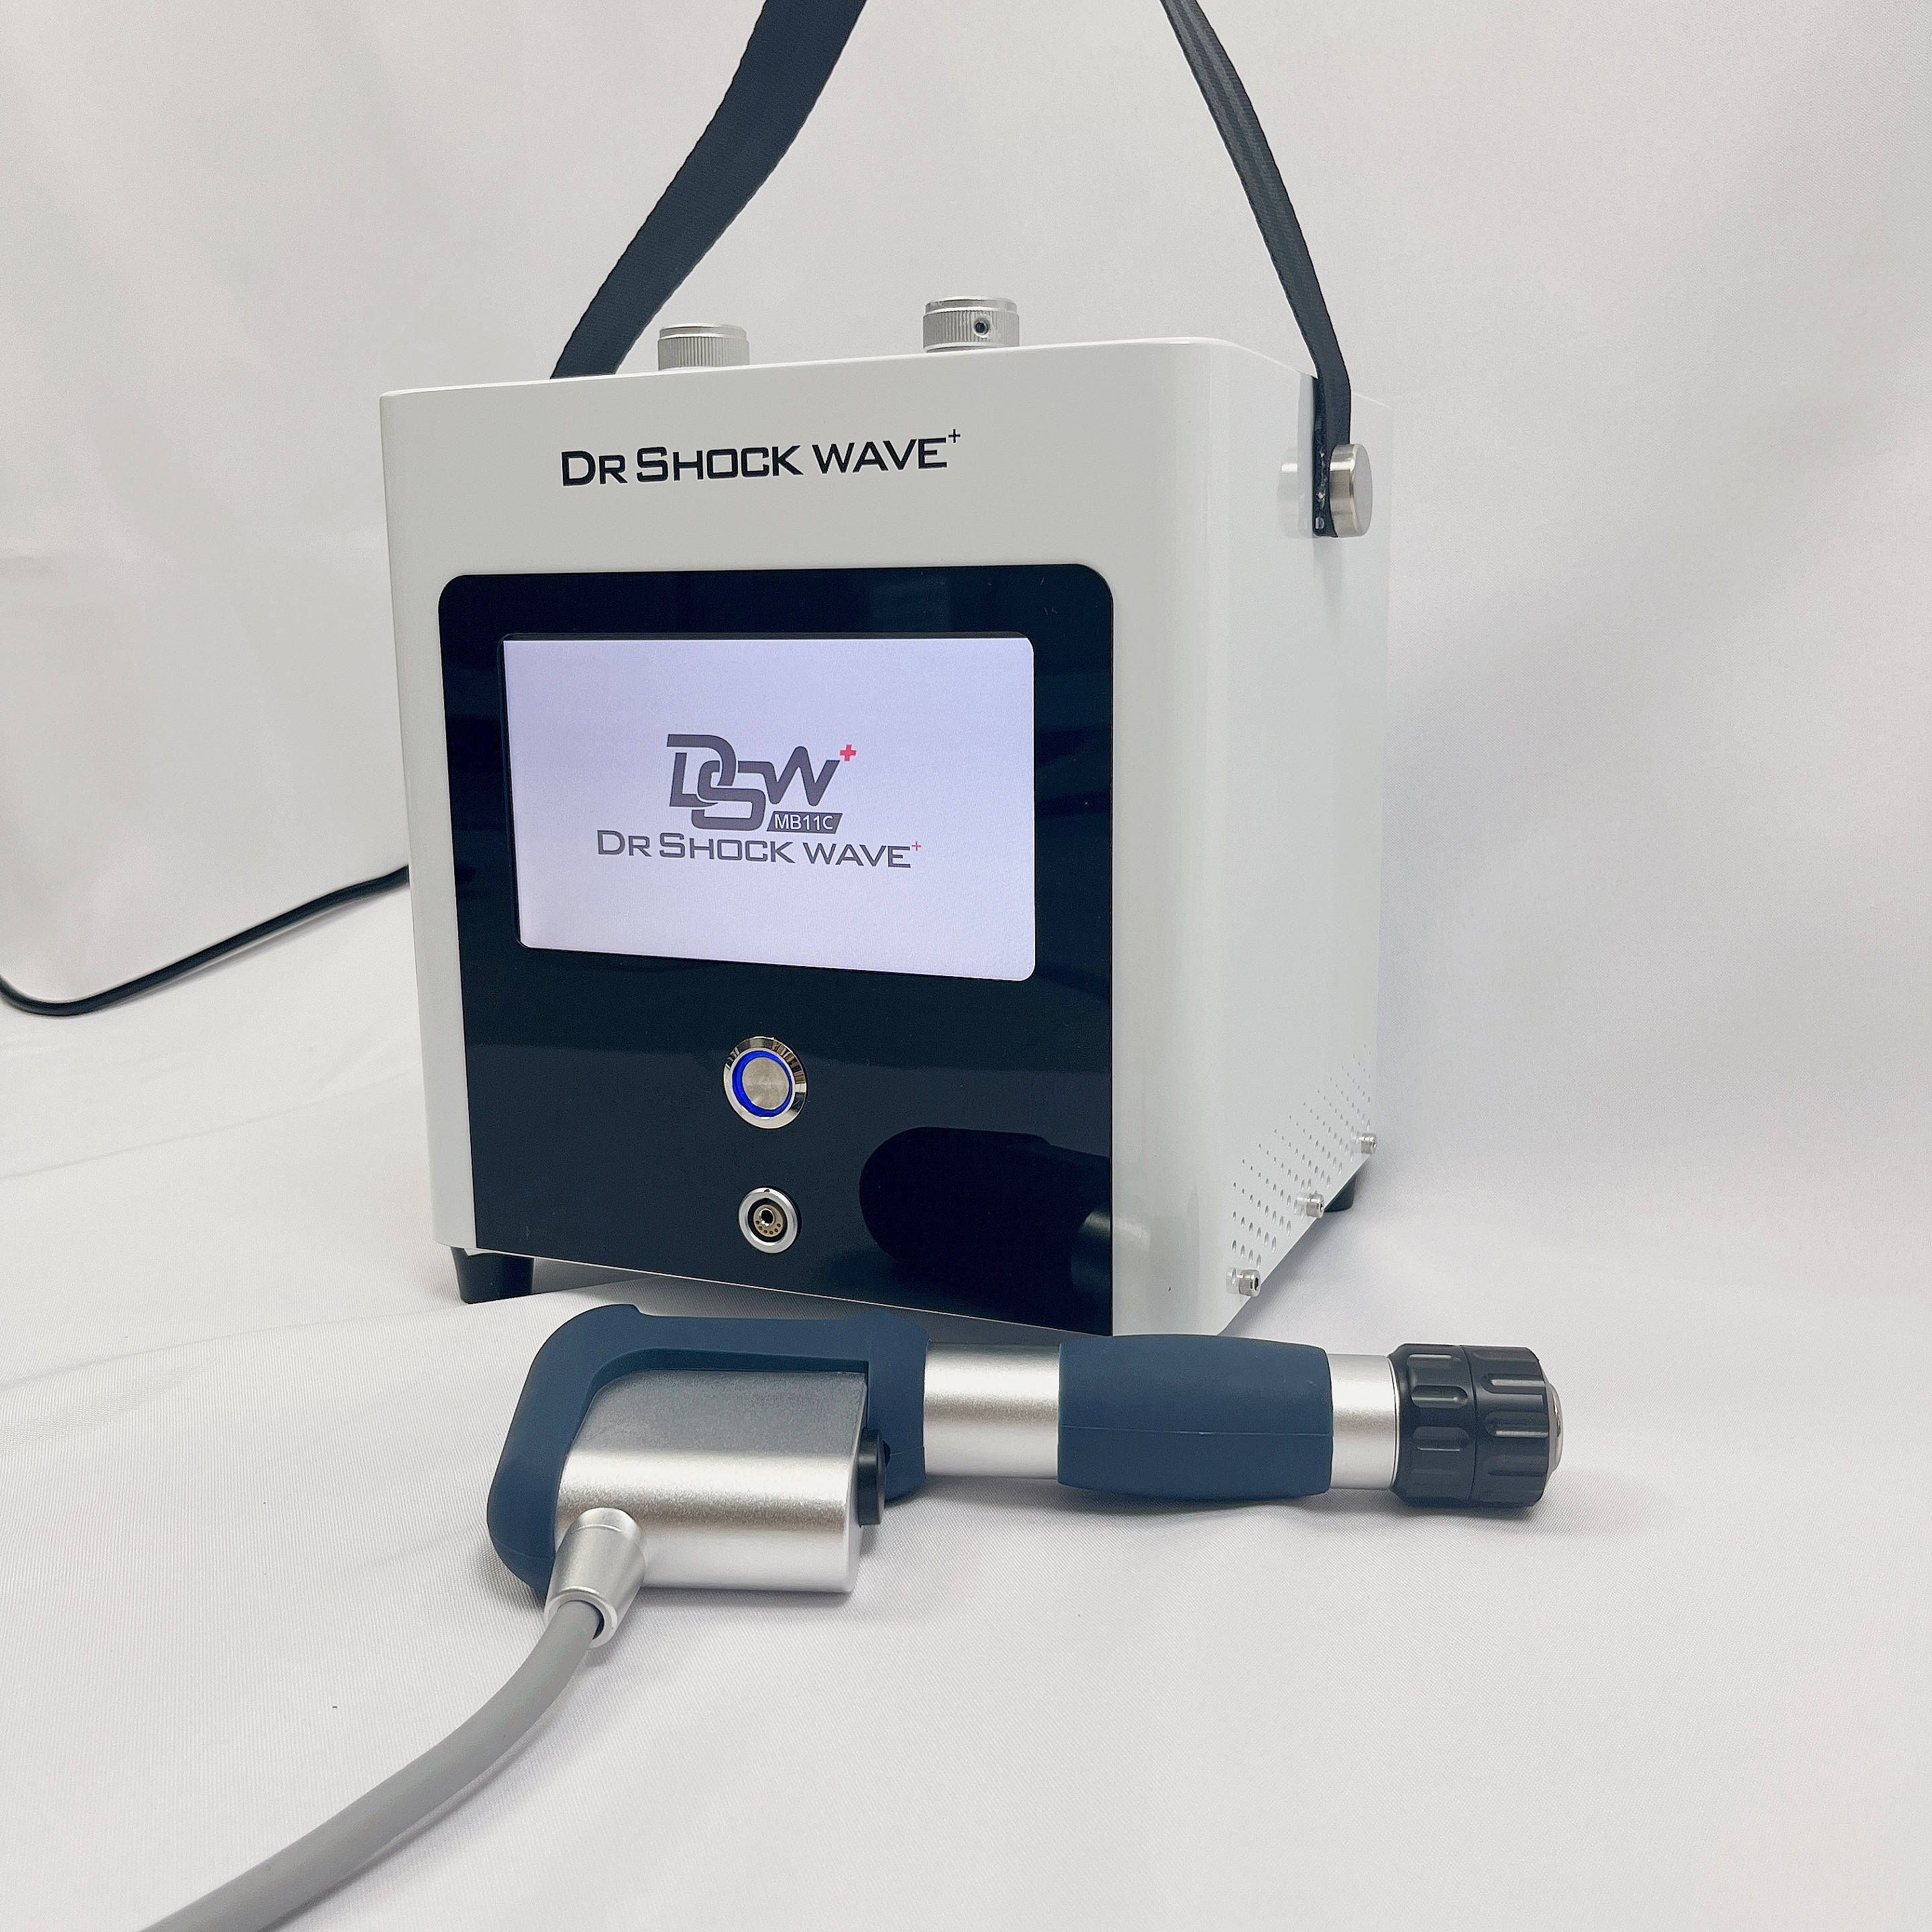 Beste kwaliteit draagbare eswt shockwave-therapiemachine voor pijnverlichting erectiestoornissen schokgolfapparatuur